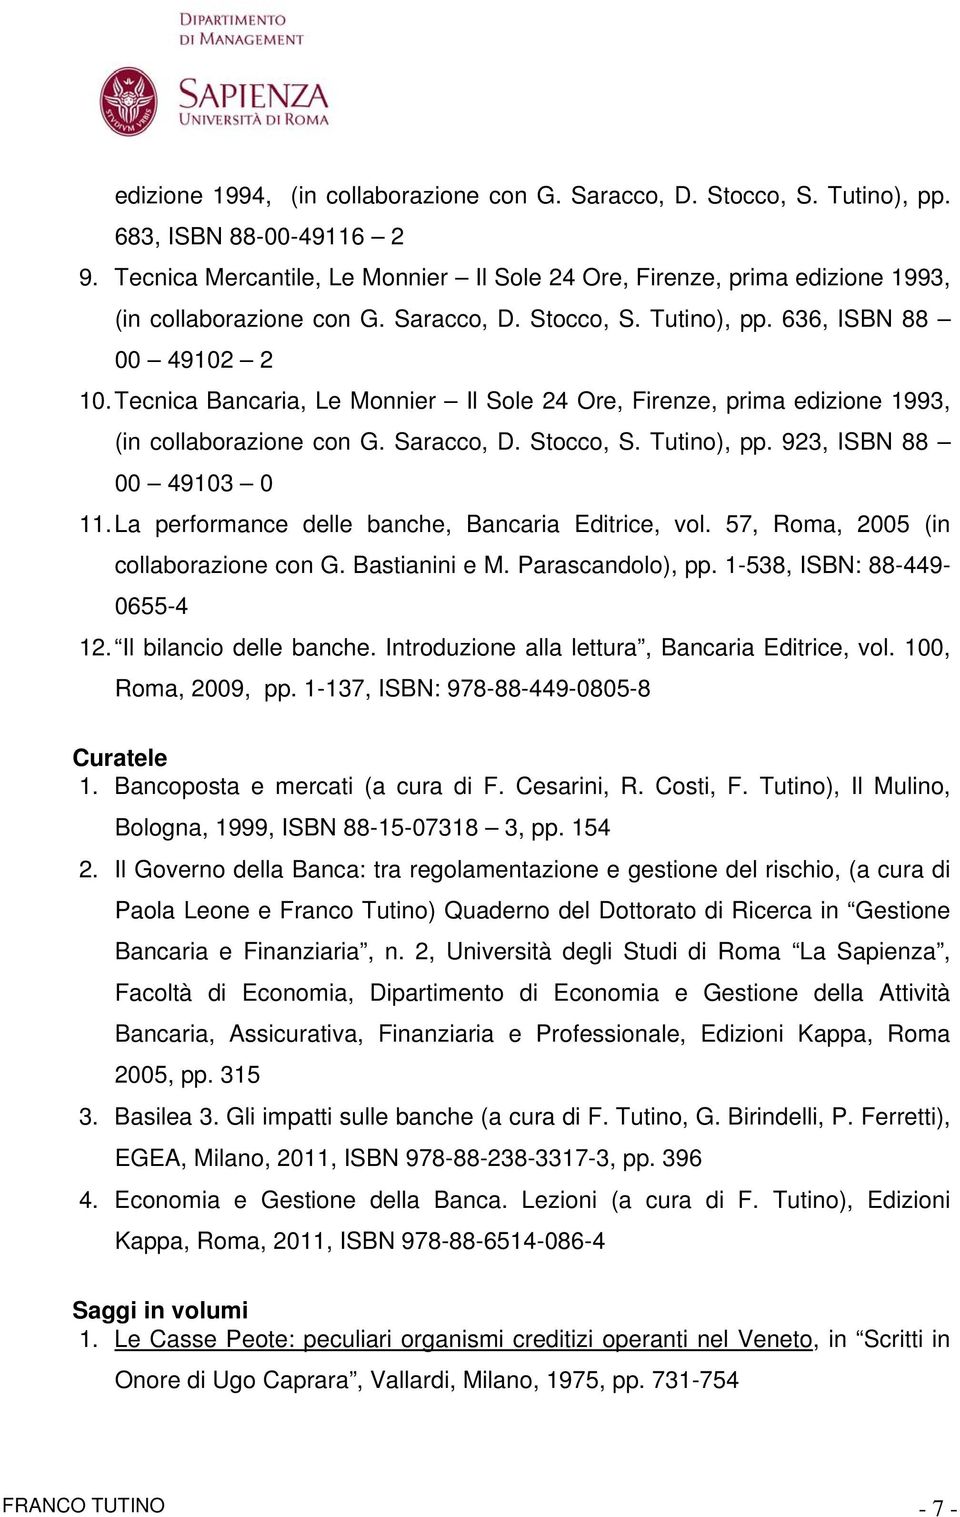 Tecnica Bancaria, Le Monnier Il Sole 24 Ore, Firenze, prima edizione 1993, (in collaborazione con G. Saracco, D. Stocco, S. Tutino), pp. 923, ISBN 88 00 49103 0 11.